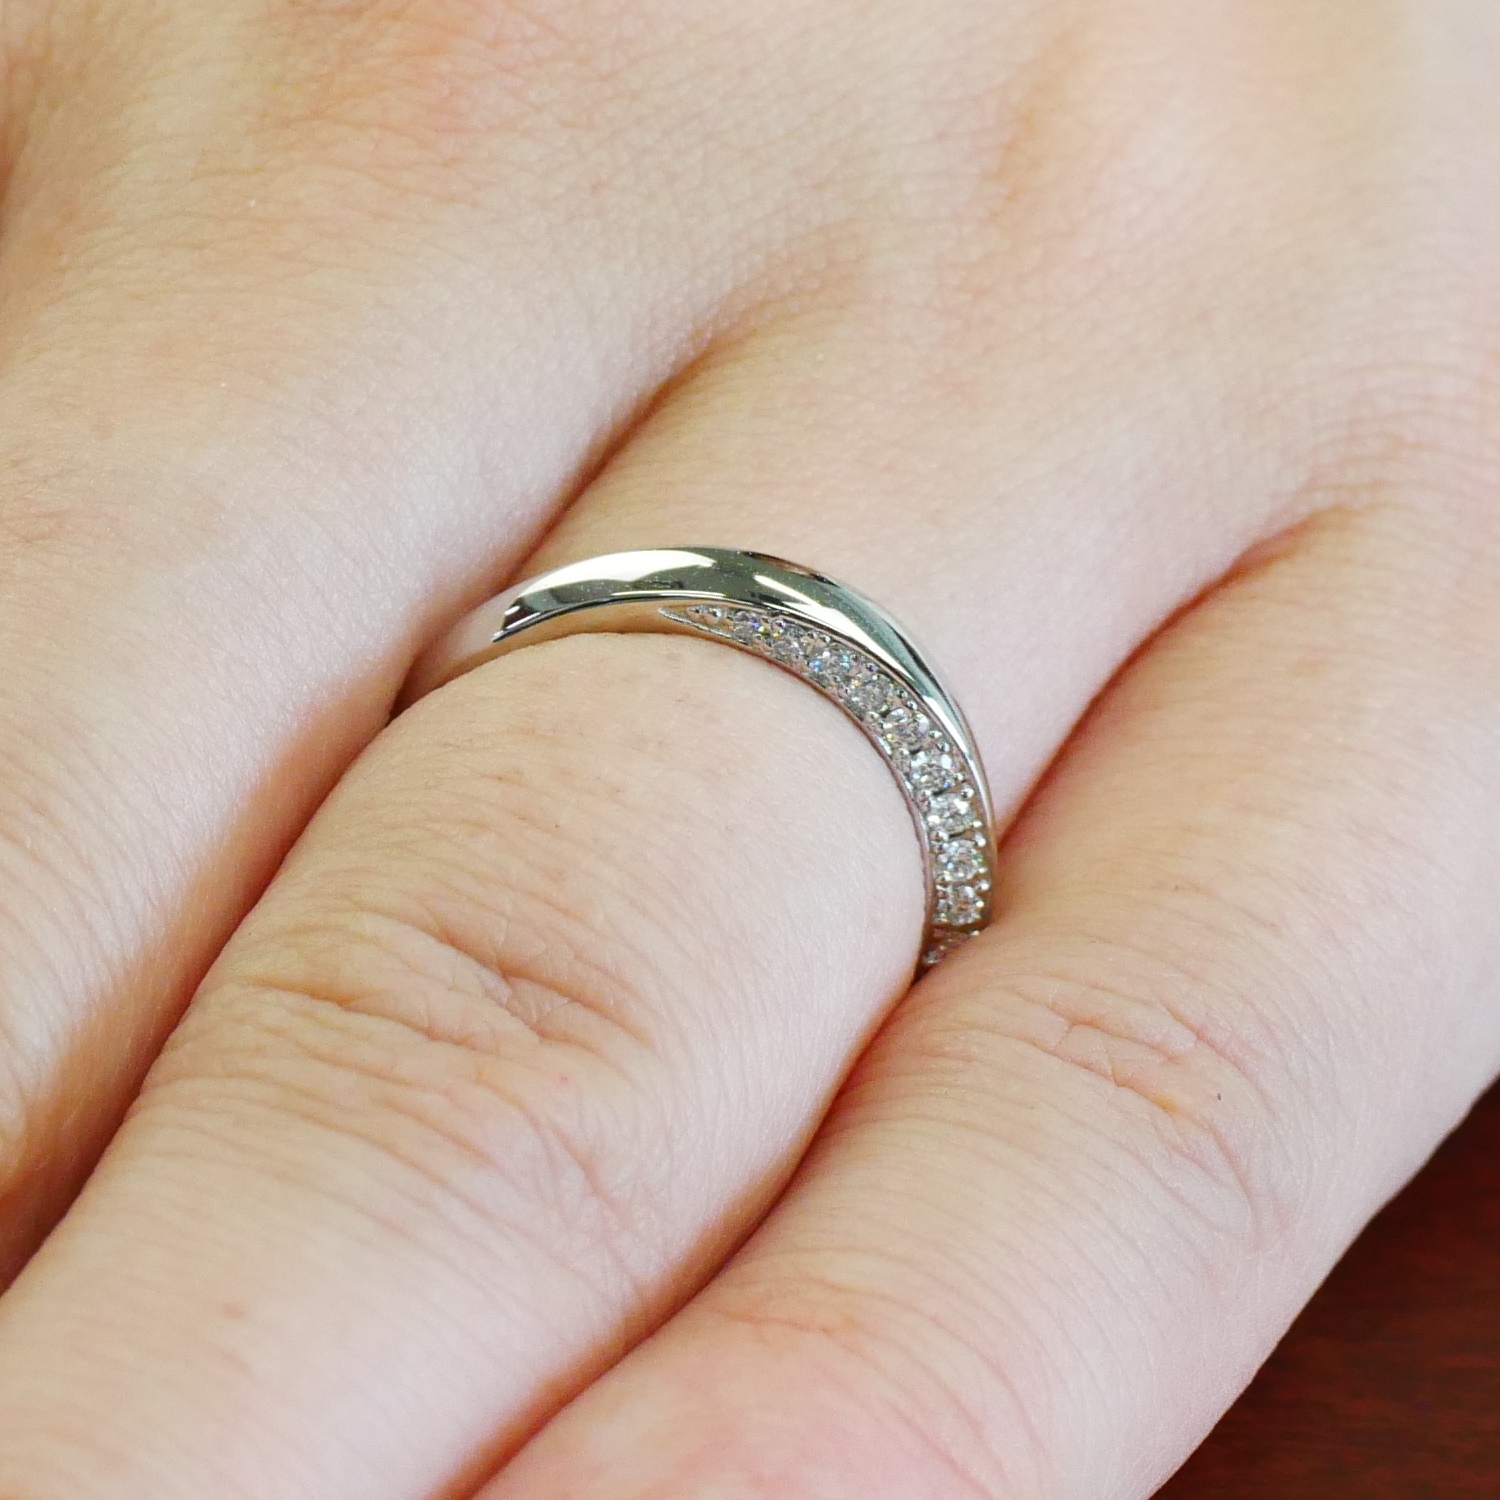 結婚指輪No4 2.5 ダイヤモンド プラチナ(幅2.5mm / Pt950) らせんデザイン | 結婚指輪の通販 | 山梨・甲府のジュエリー